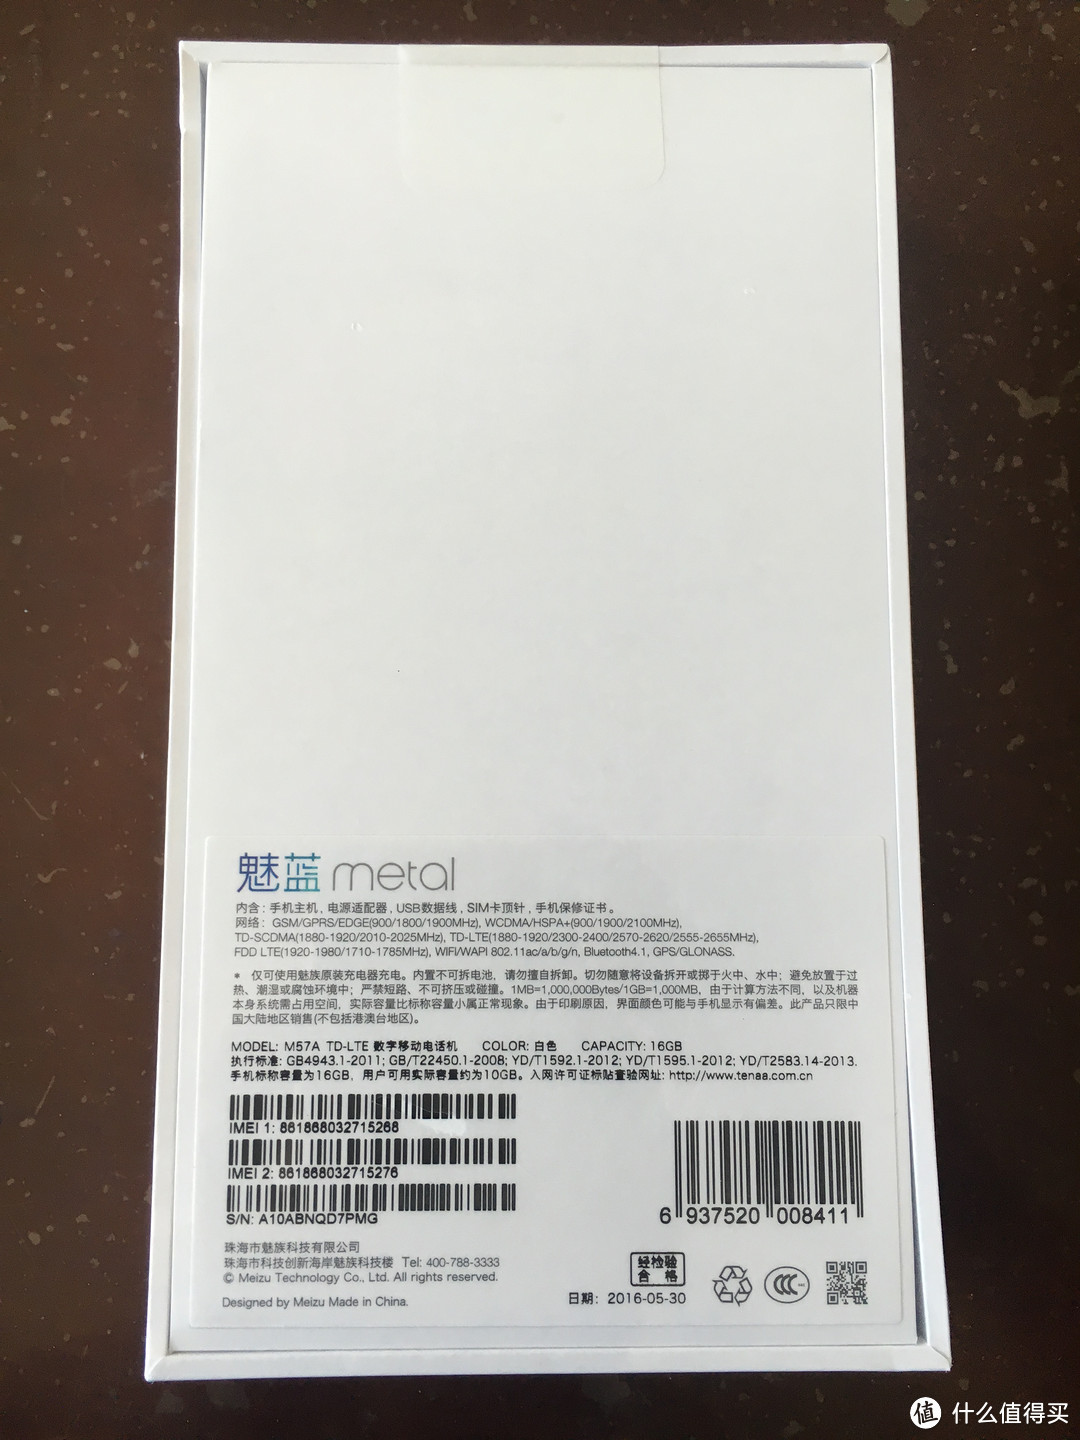 一次备机的选择——MEIZU 魅蓝 metal 16G白色 开箱